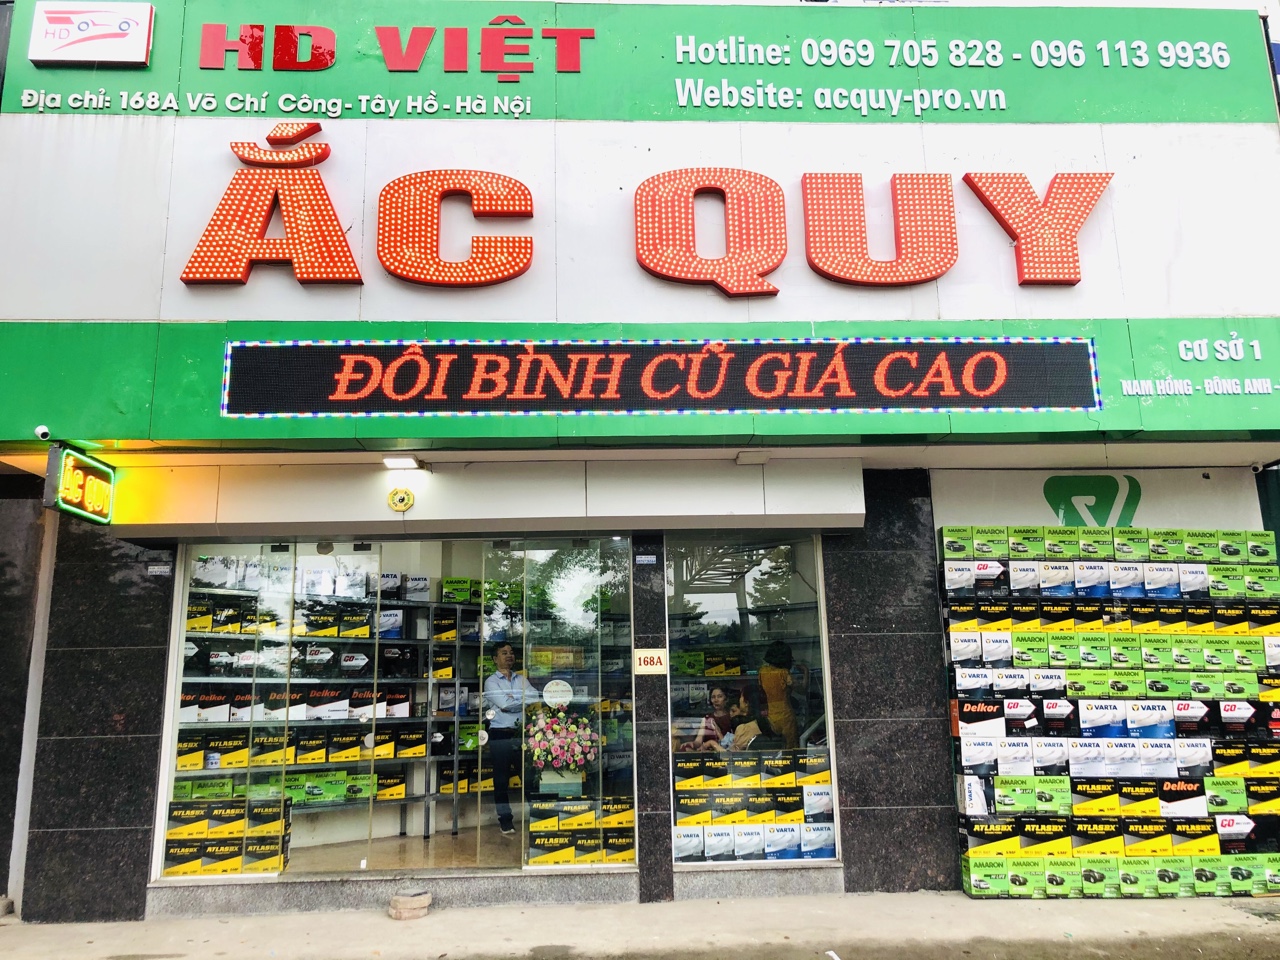 HD Việt - Đại lý ắc quy ô tô chính hãng tại Hà Nội